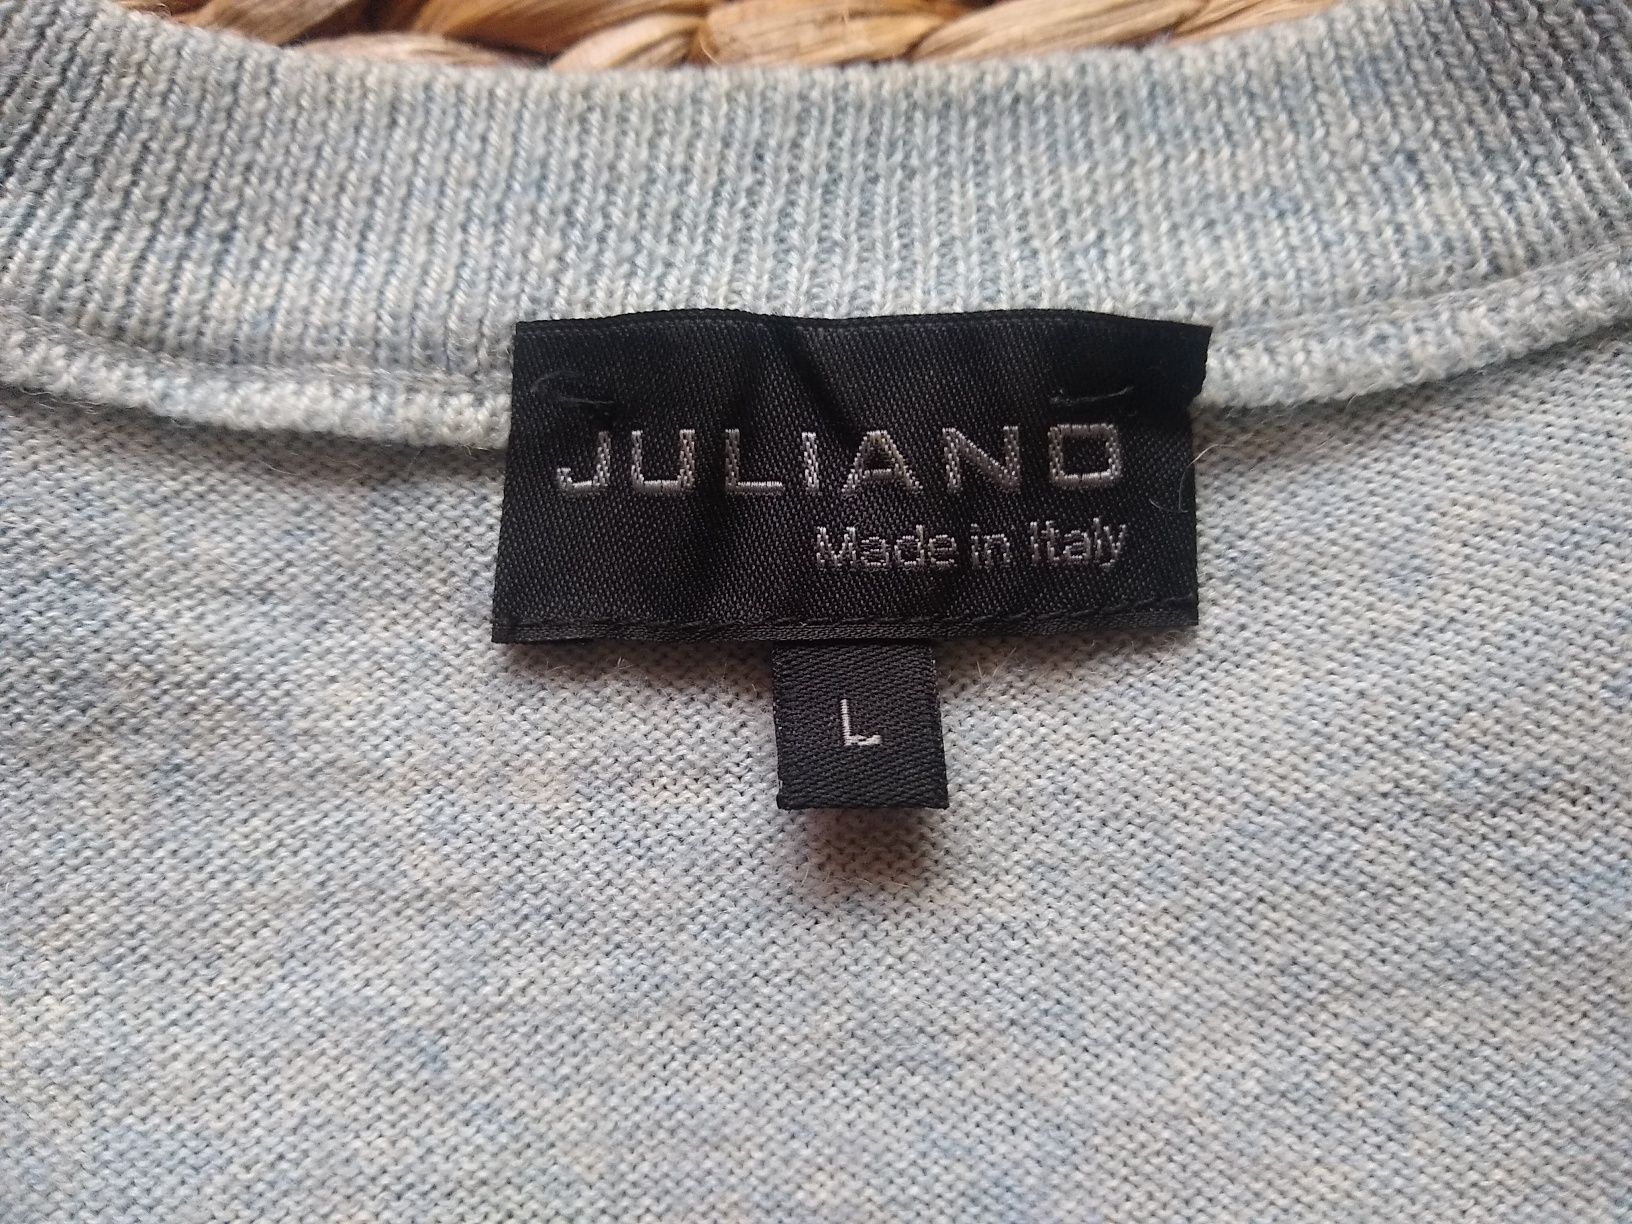 Juliano, Made in Italy, Elegancki męski sweter, 50% Merino